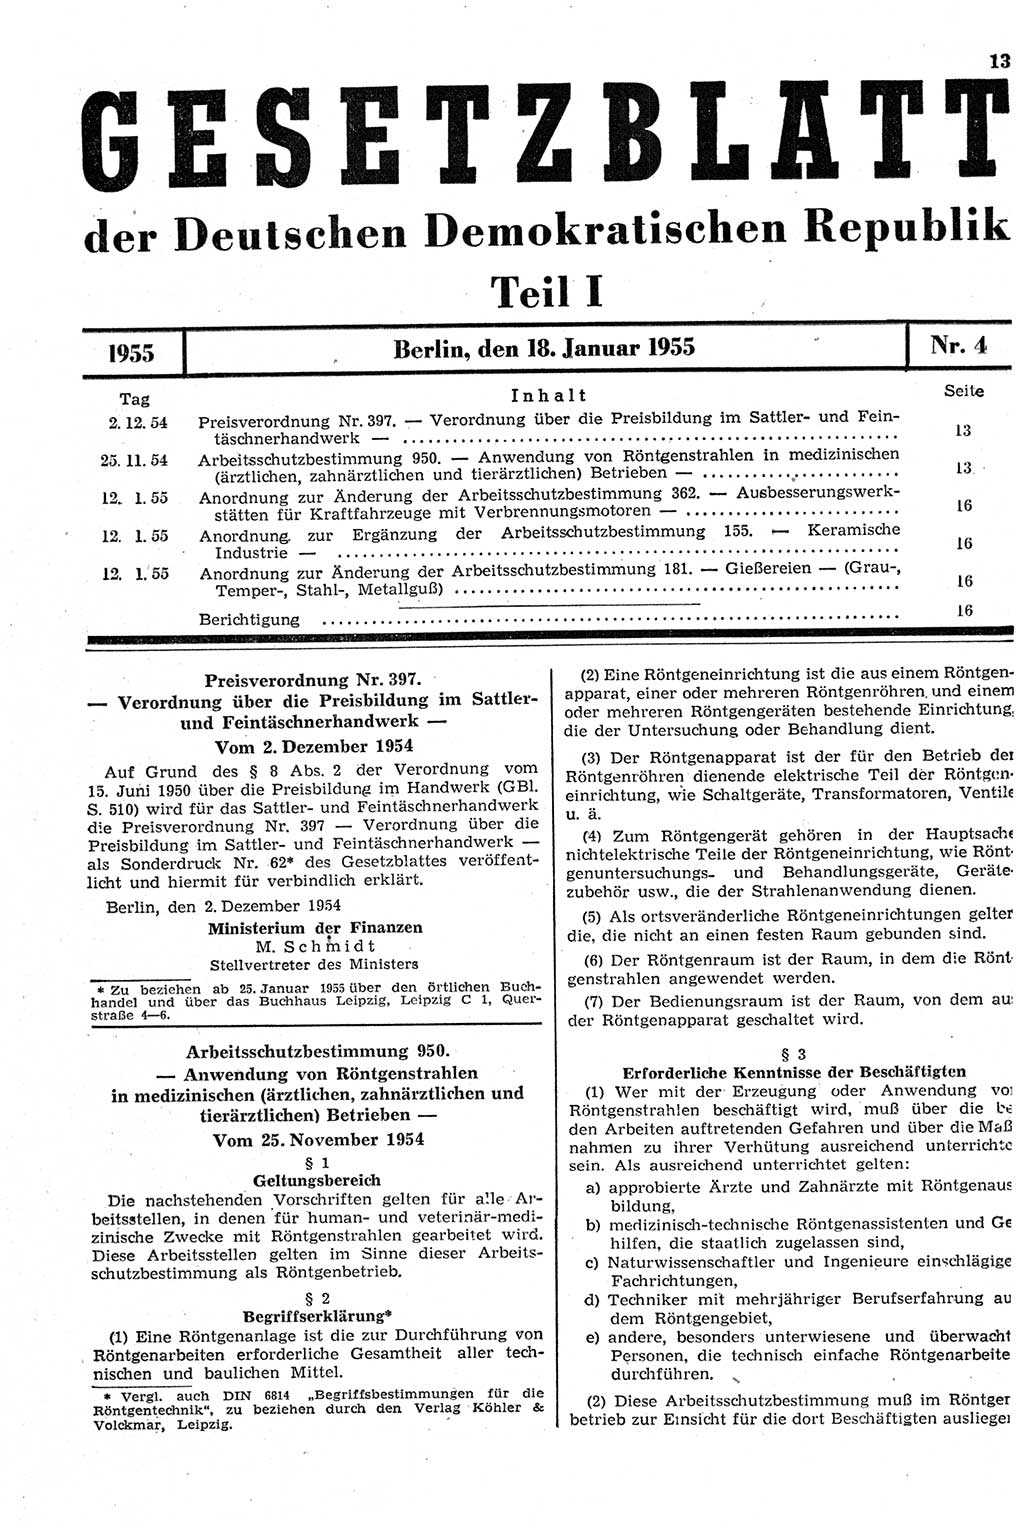 Gesetzblatt (GBl.) der Deutschen Demokratischen Republik (DDR) Teil Ⅰ 1955, Seite 13 (GBl. DDR Ⅰ 1955, S. 13)